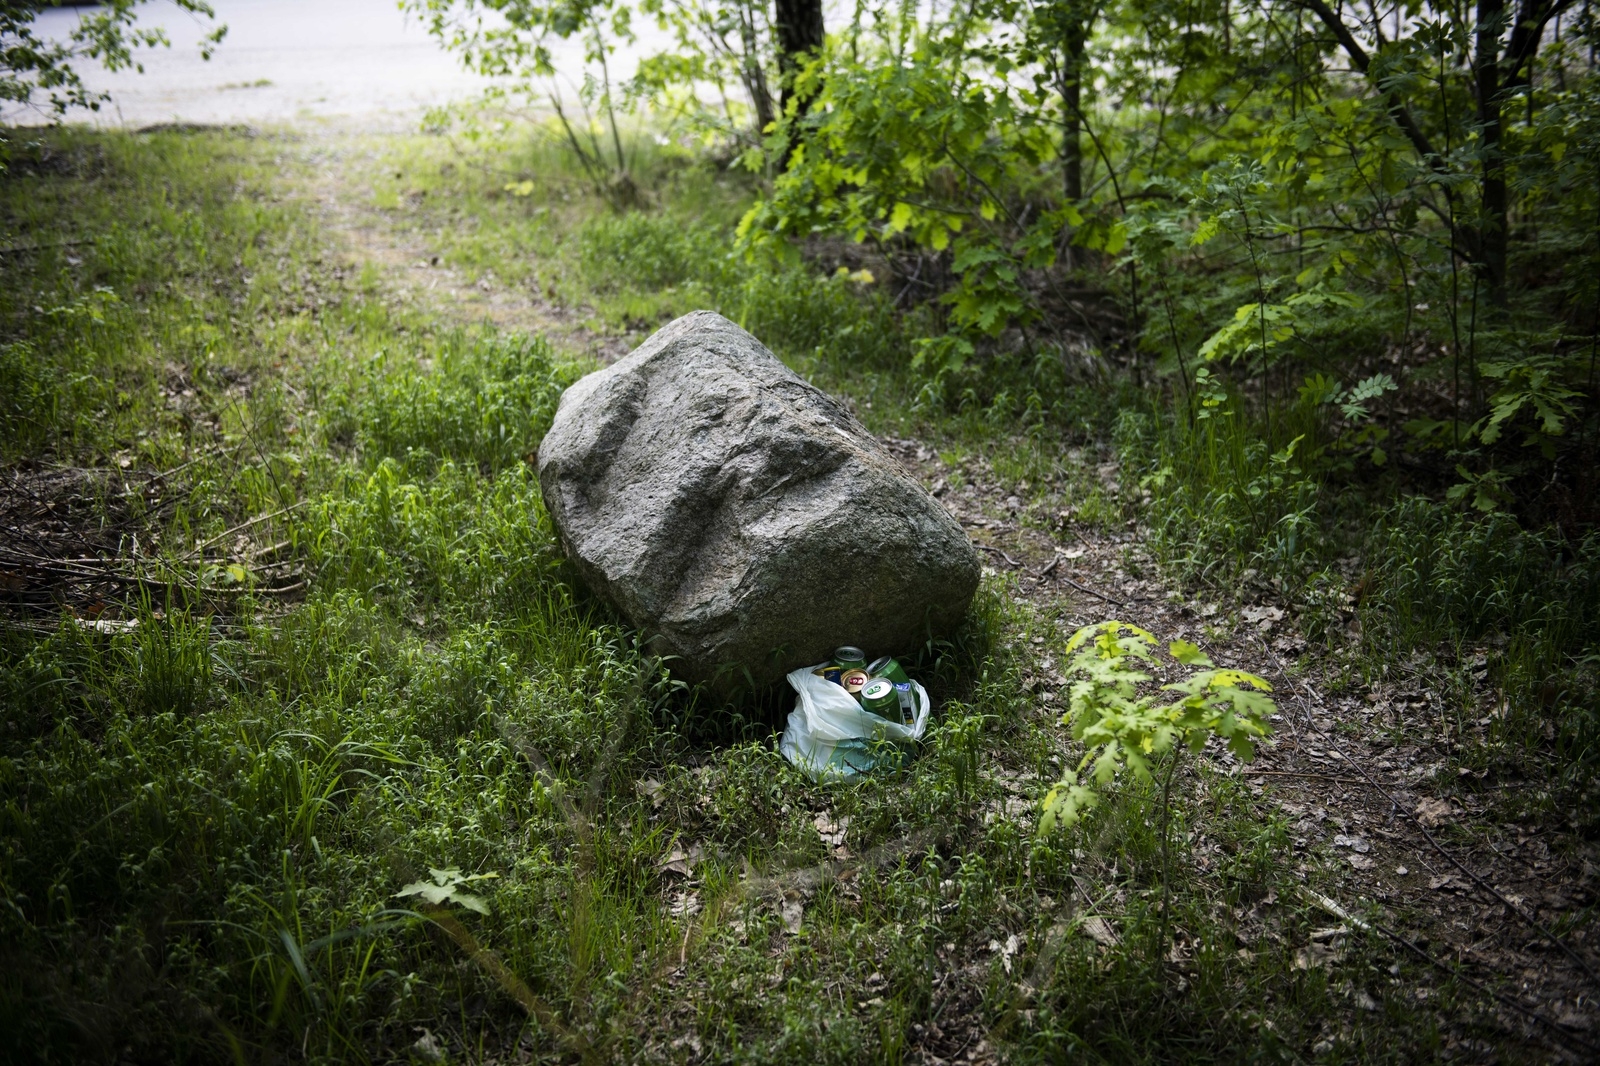 En specifik sten i skogen brukade politikern lämna alkohol som Emil kunde hämta, berättar han. Bilden är arrangerad.